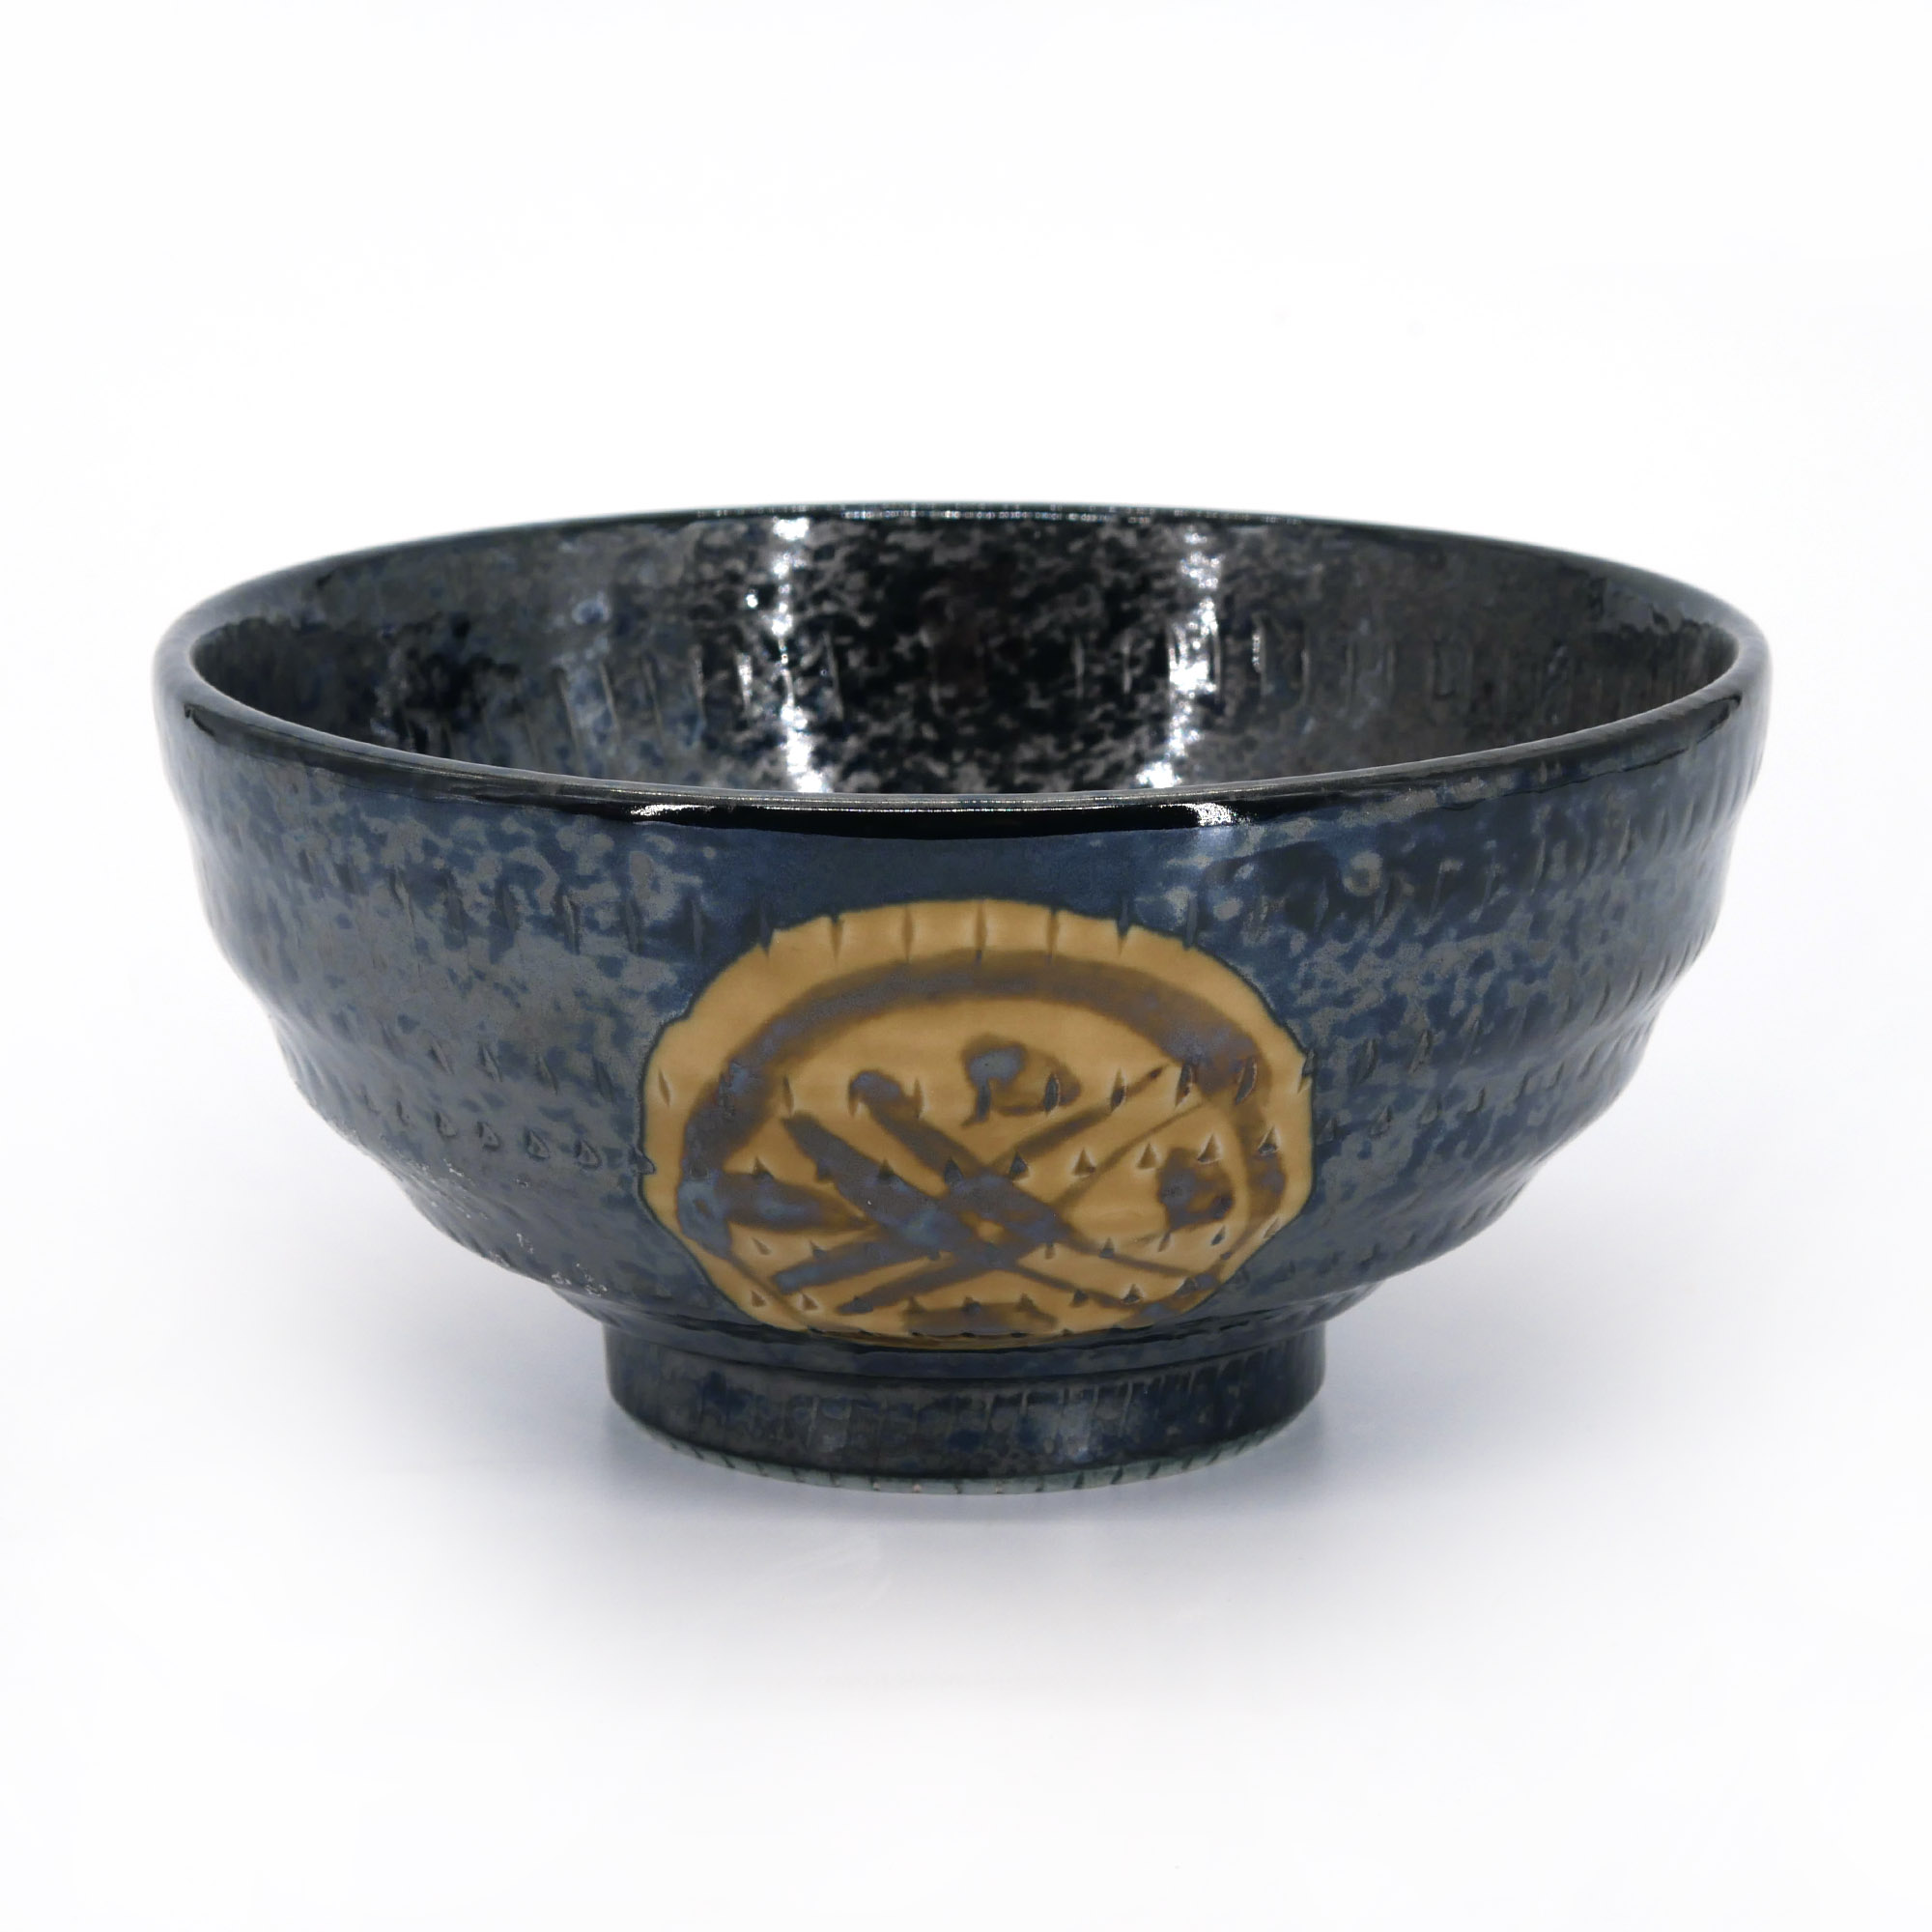 https://kyotoboutique.fr/32720/ciotola-per-riso-in-ceramica-giapponese-igeta-nero-e-marrone.jpg